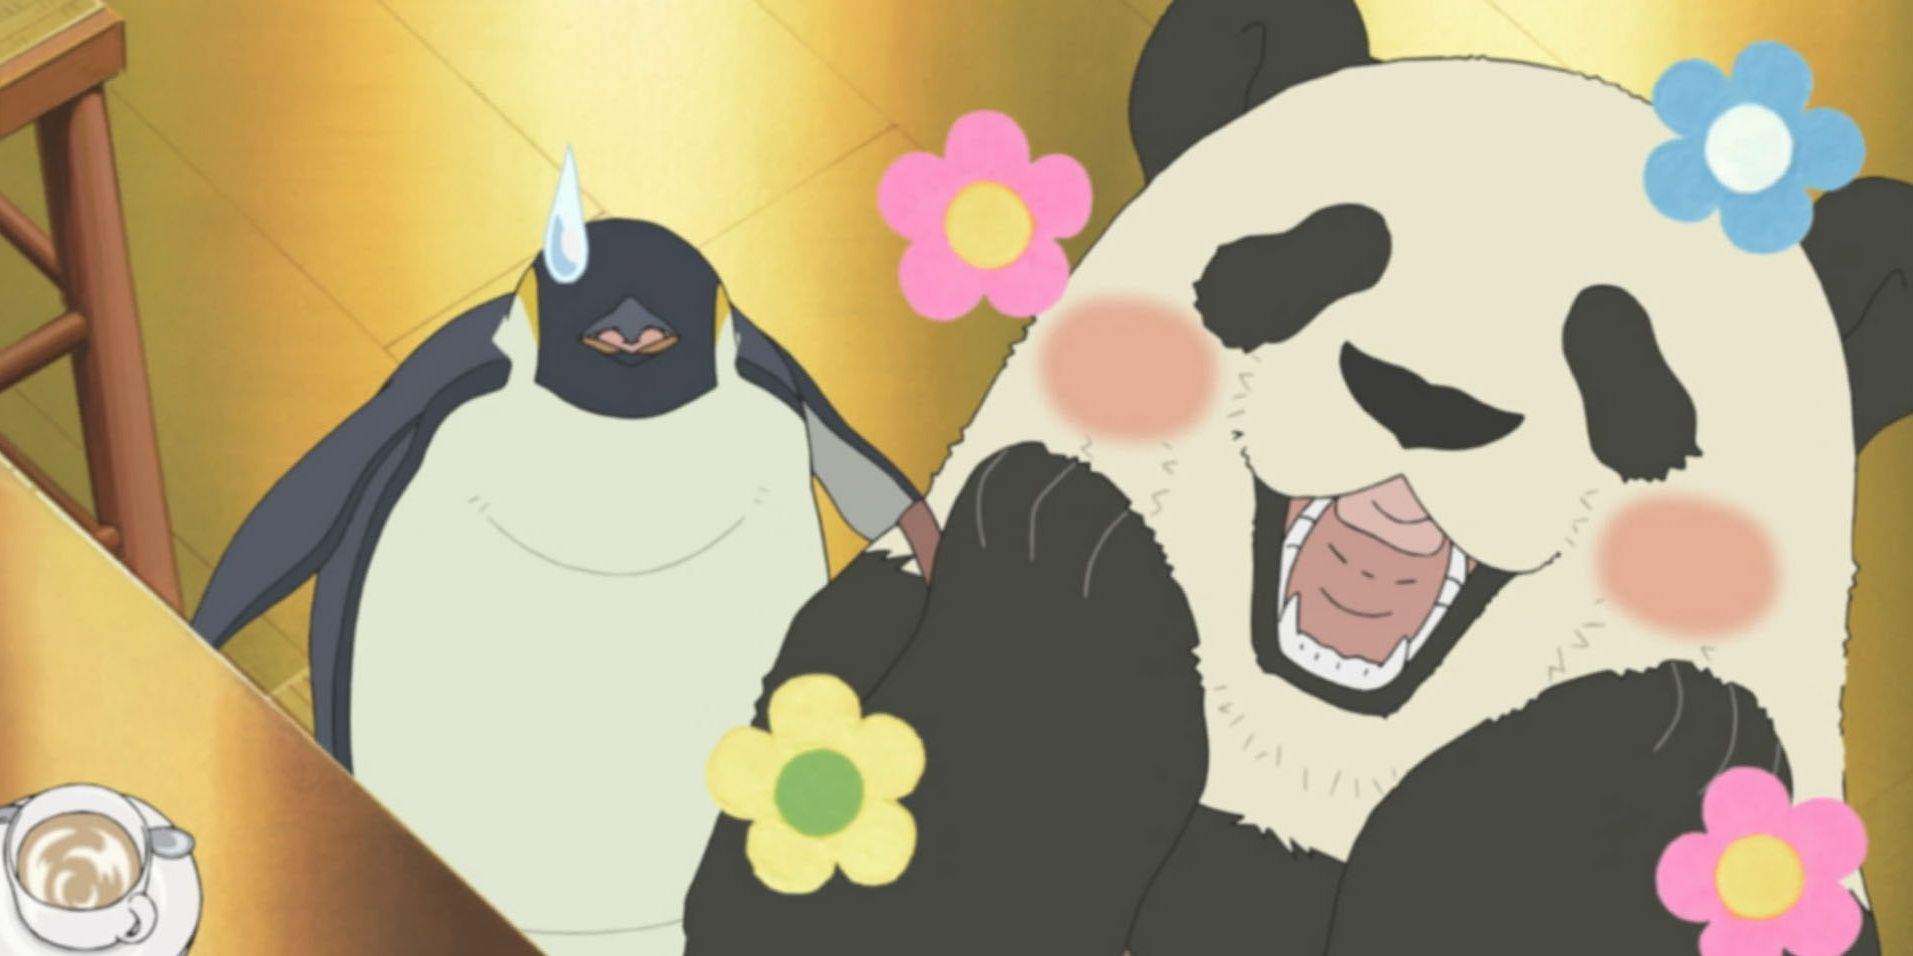 The Best Animal Anime Isn't Beastars, It's Polar Bear Café